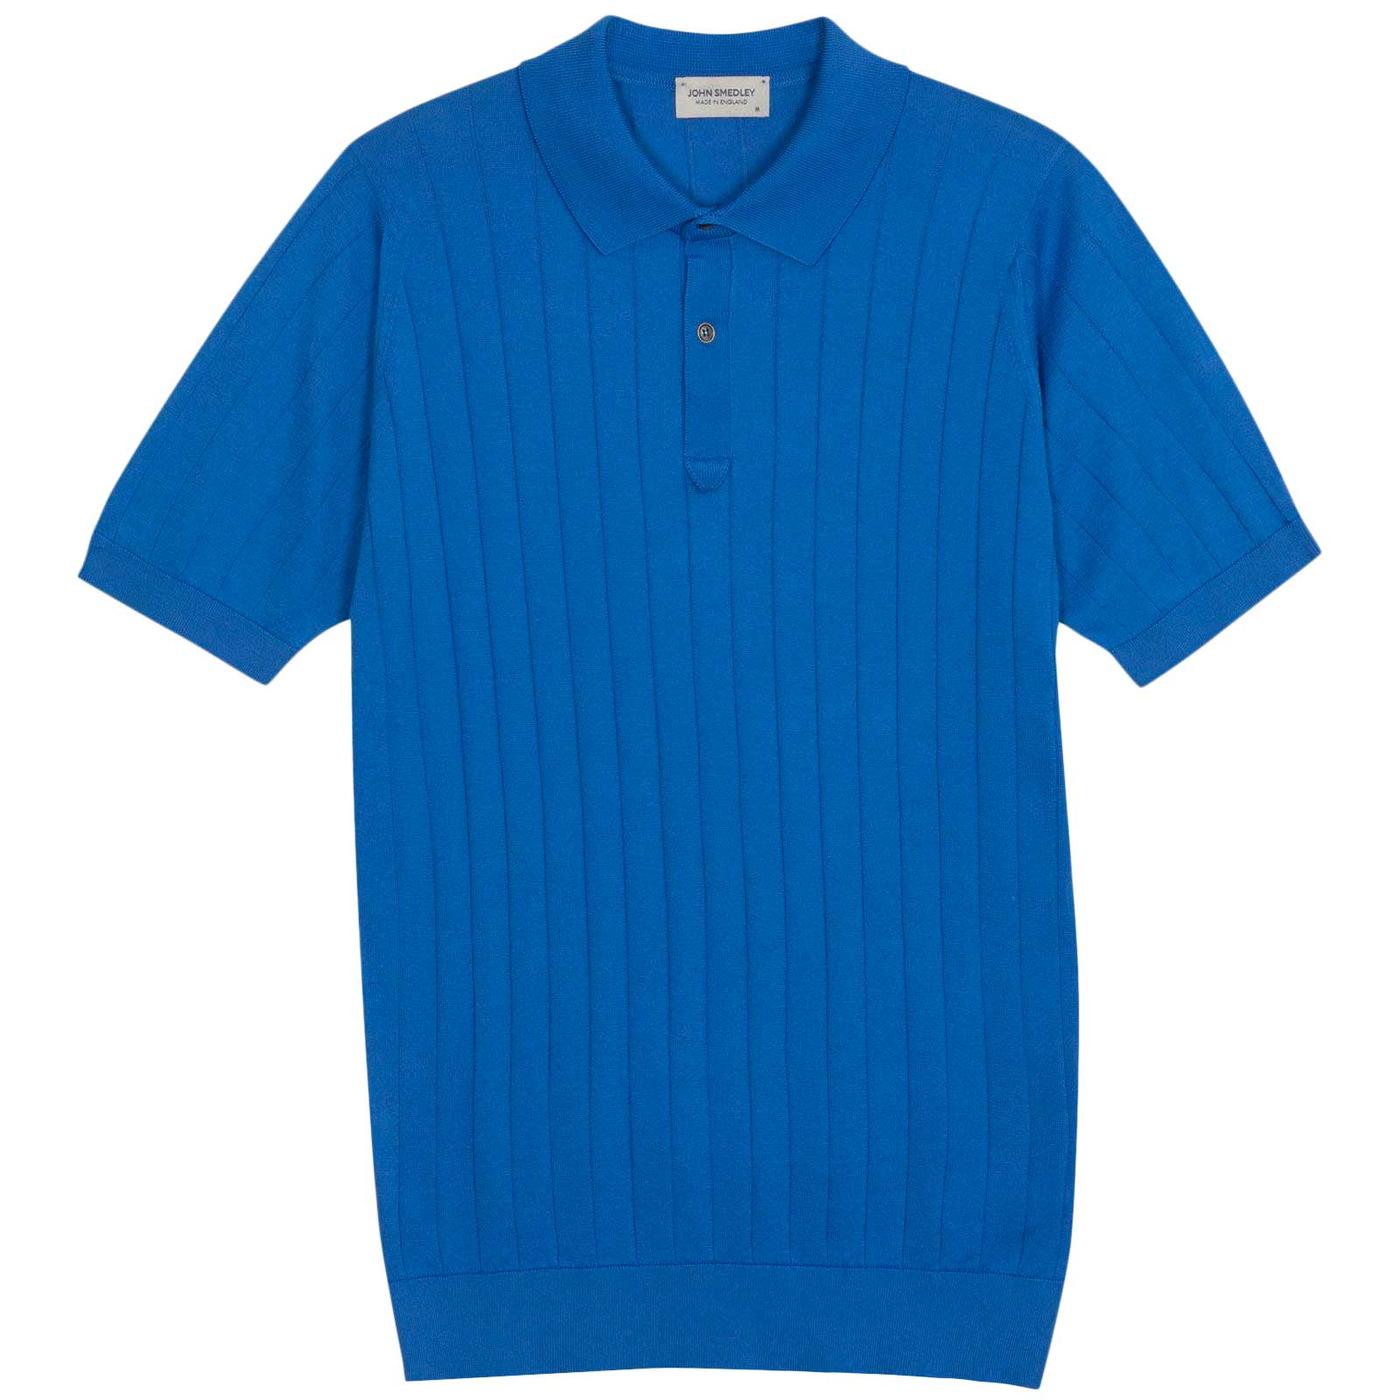 Leeshaw John Smedley Ribbed Stripe Polo Shirt EB